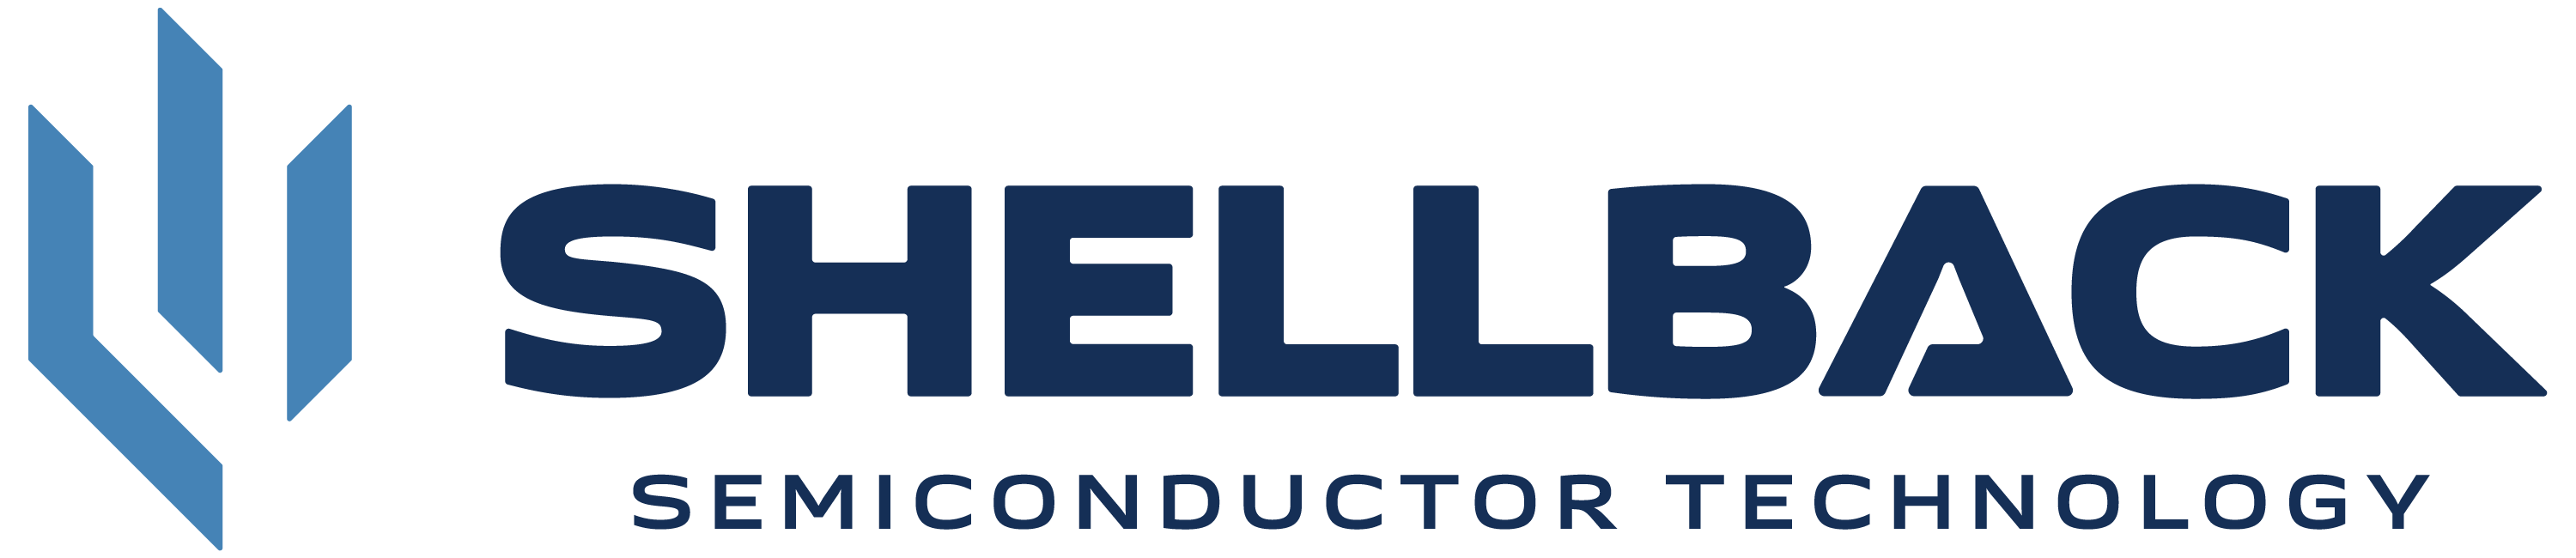 SHELLBACK Semiconductor Technology